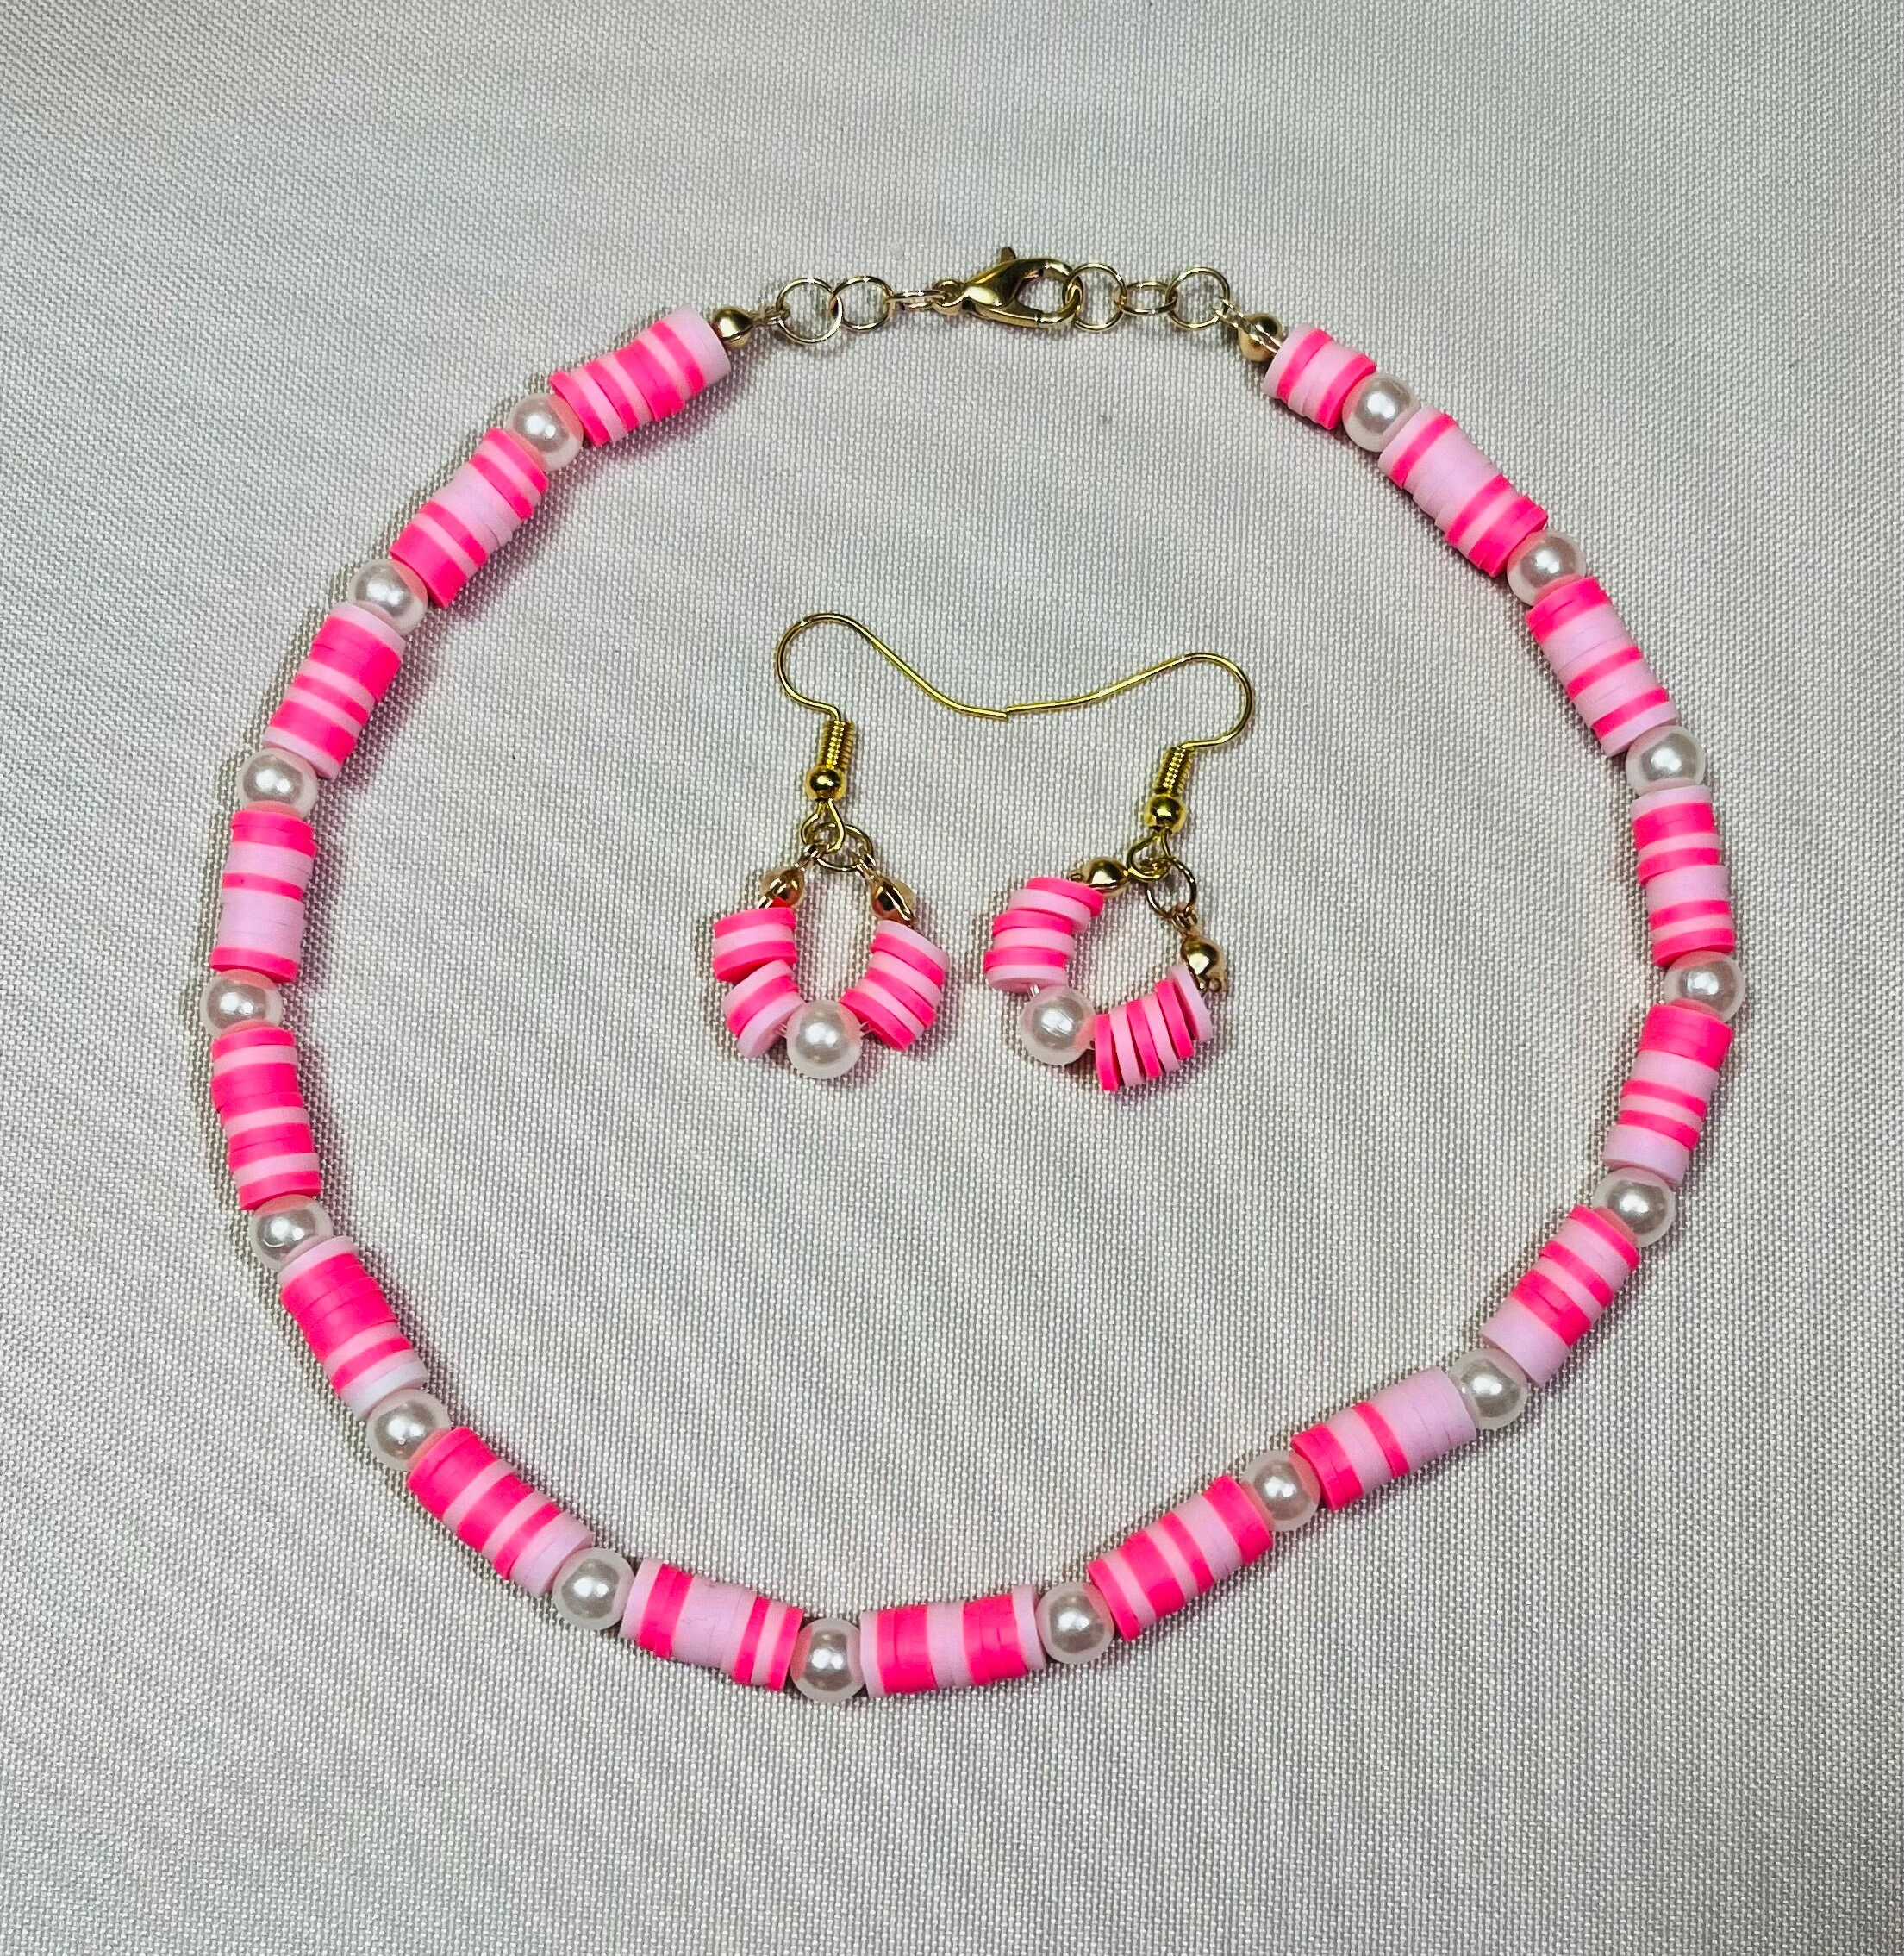 4800pcs Clay Beads for Bracelet Making Kit,friendship Bracelet Kit